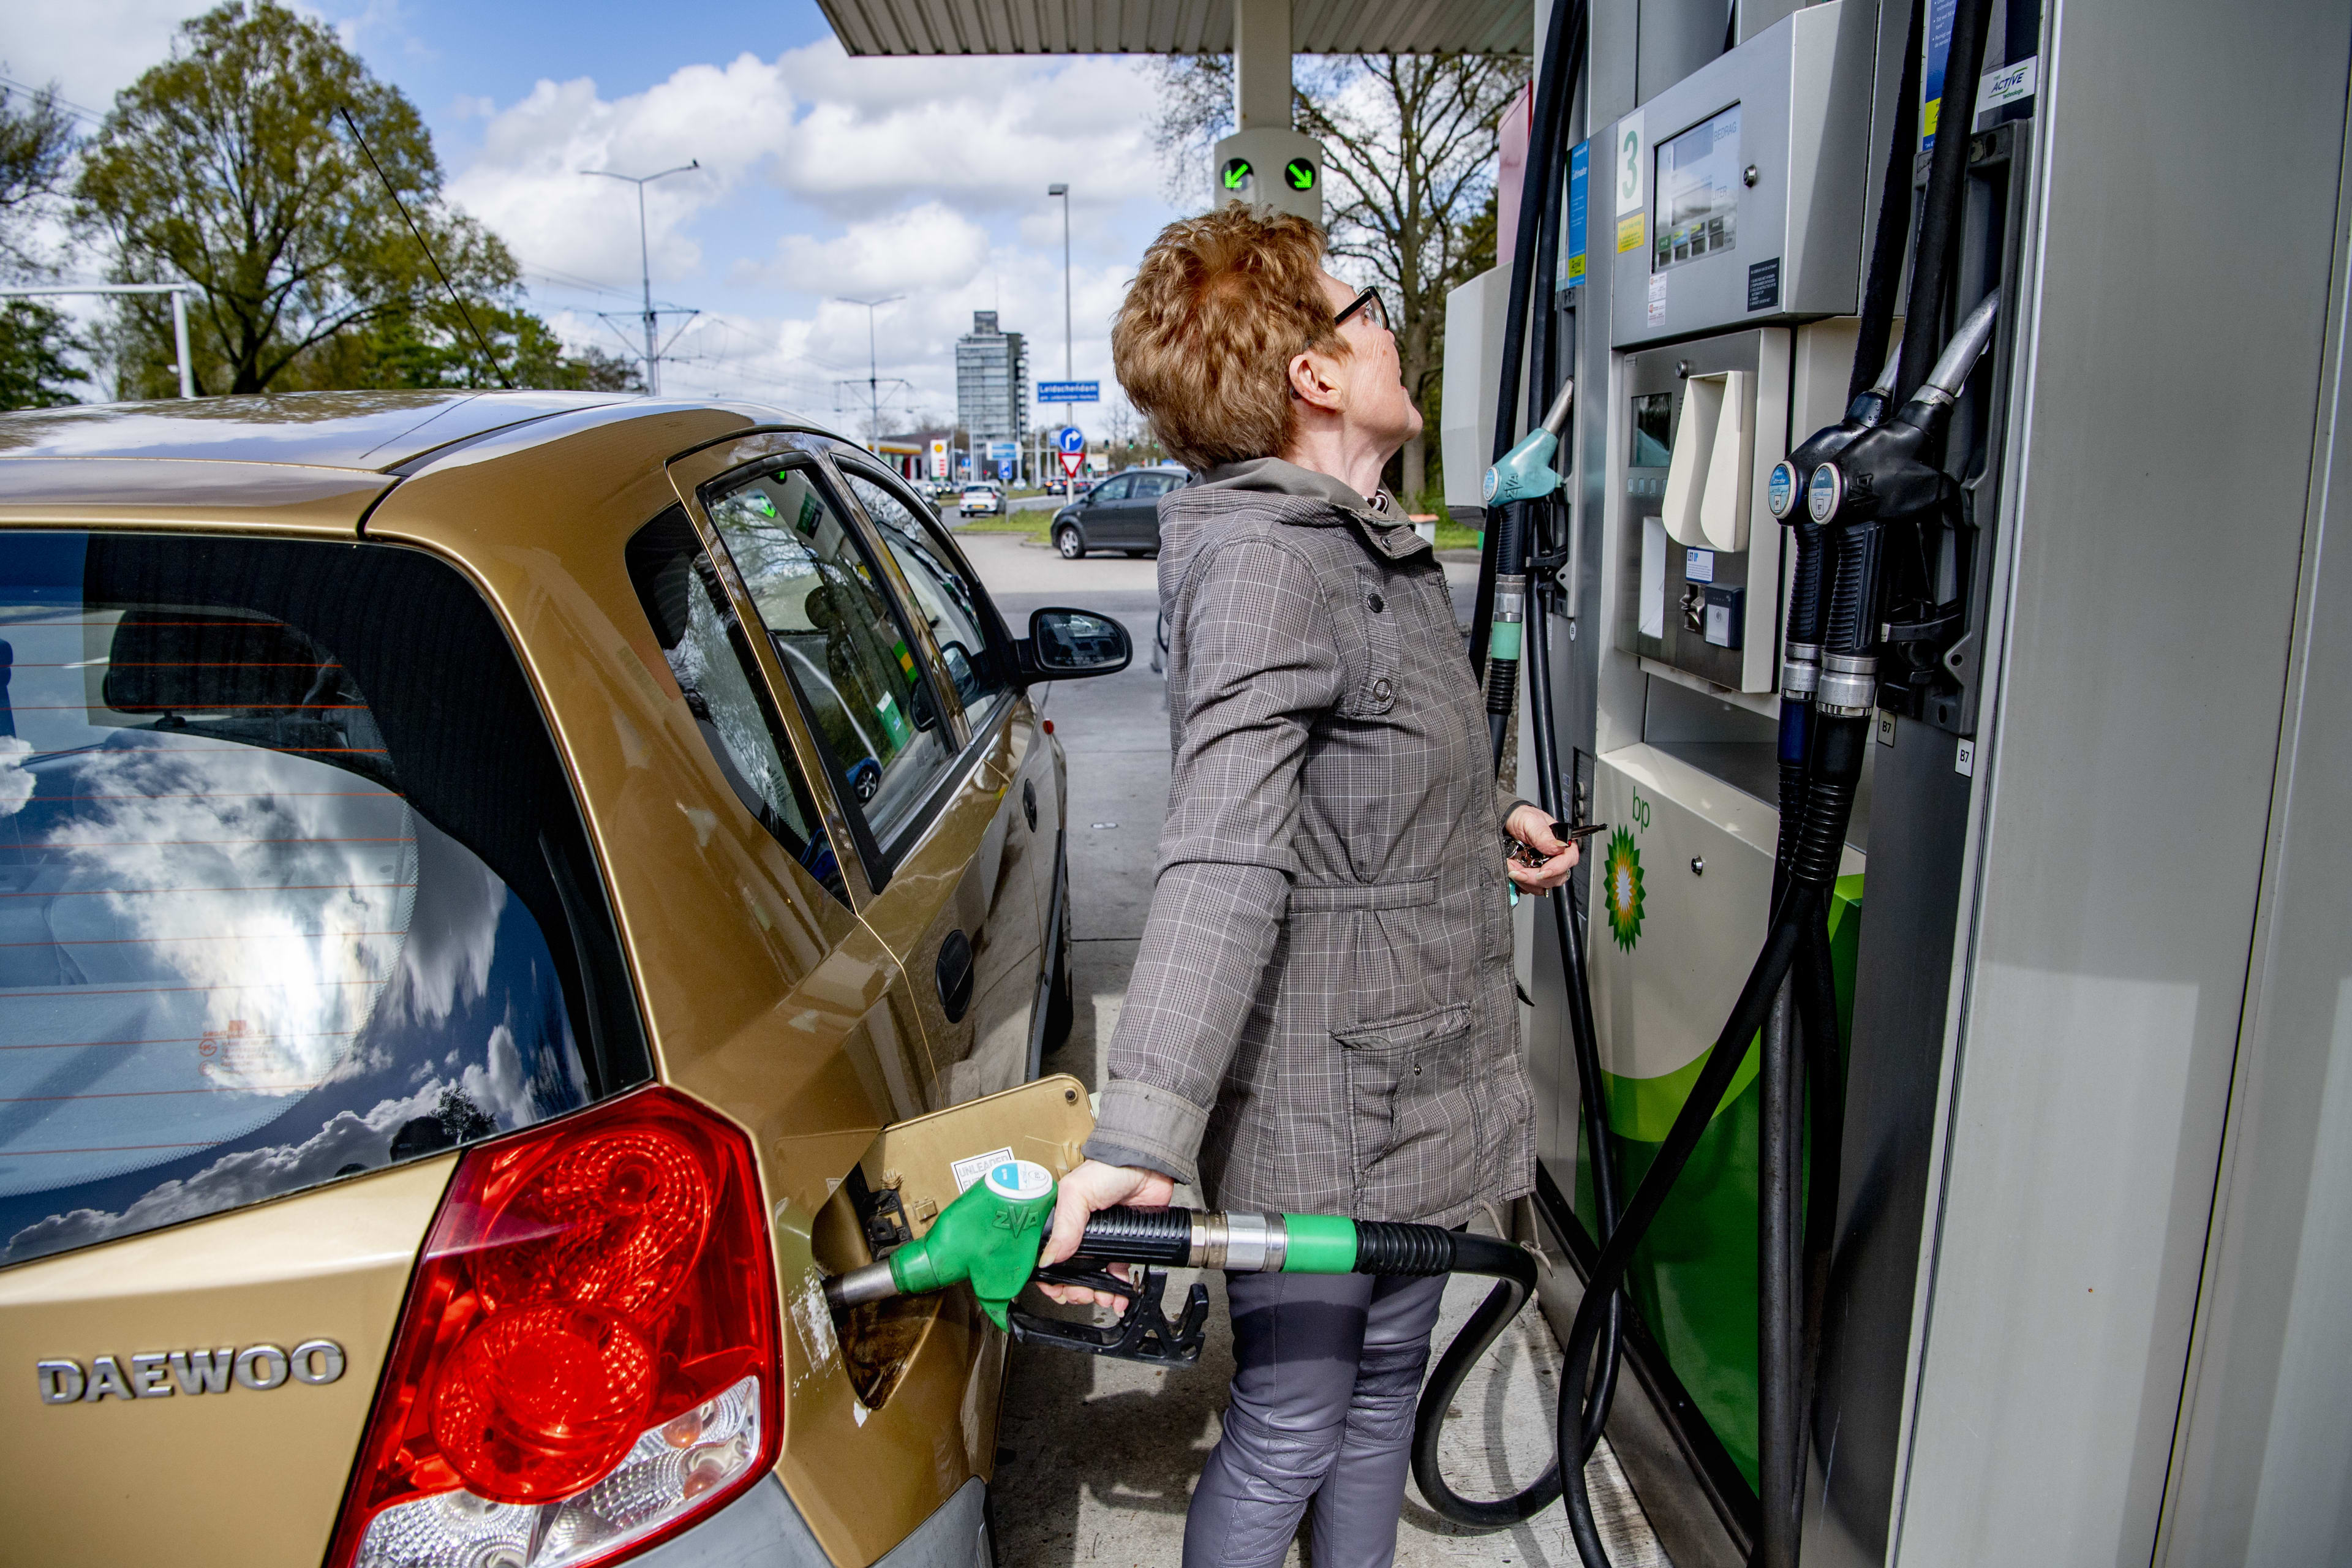 Benzineprijzen ongekend hoog, en het einde is nog niet in zicht